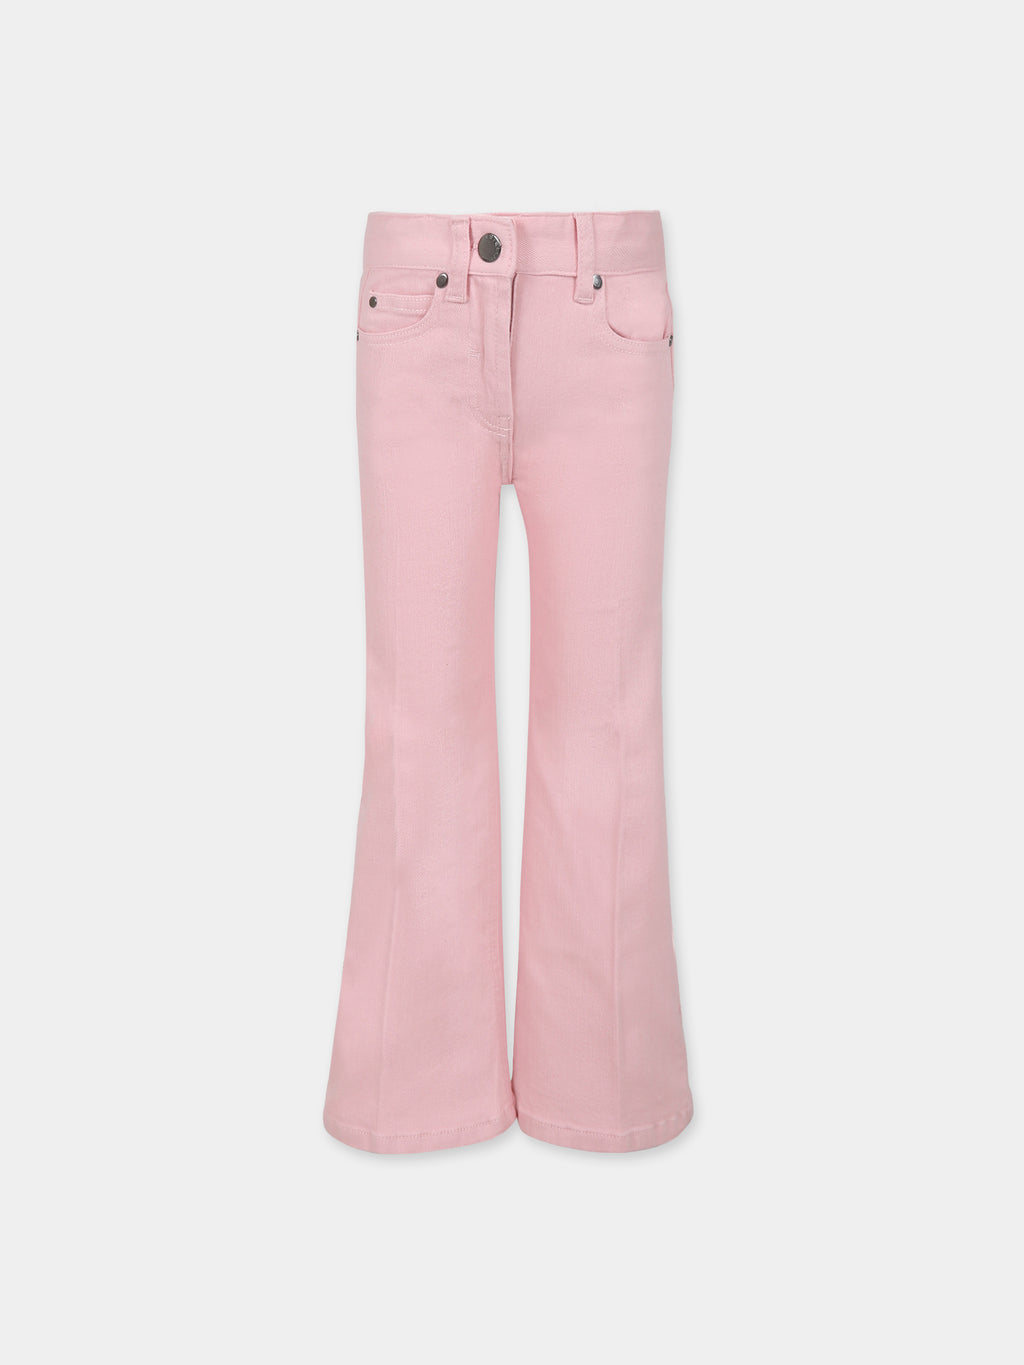 Jeans rosa per bambina con logo